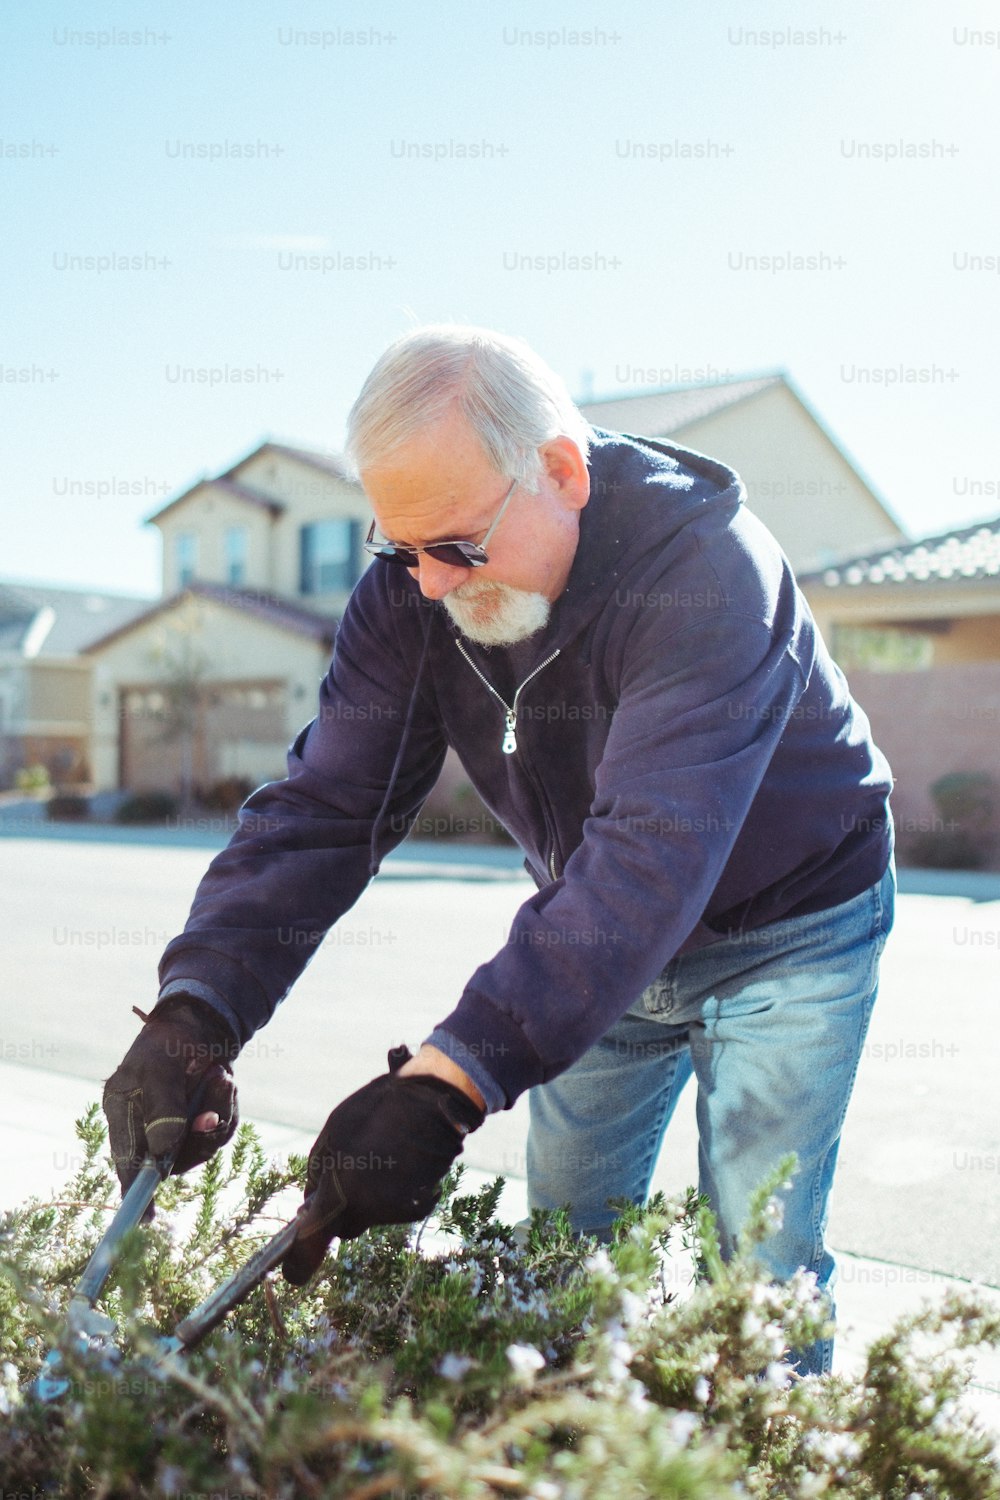 Un uomo anziano sta diserbando un cespuglio con un paio di guanti